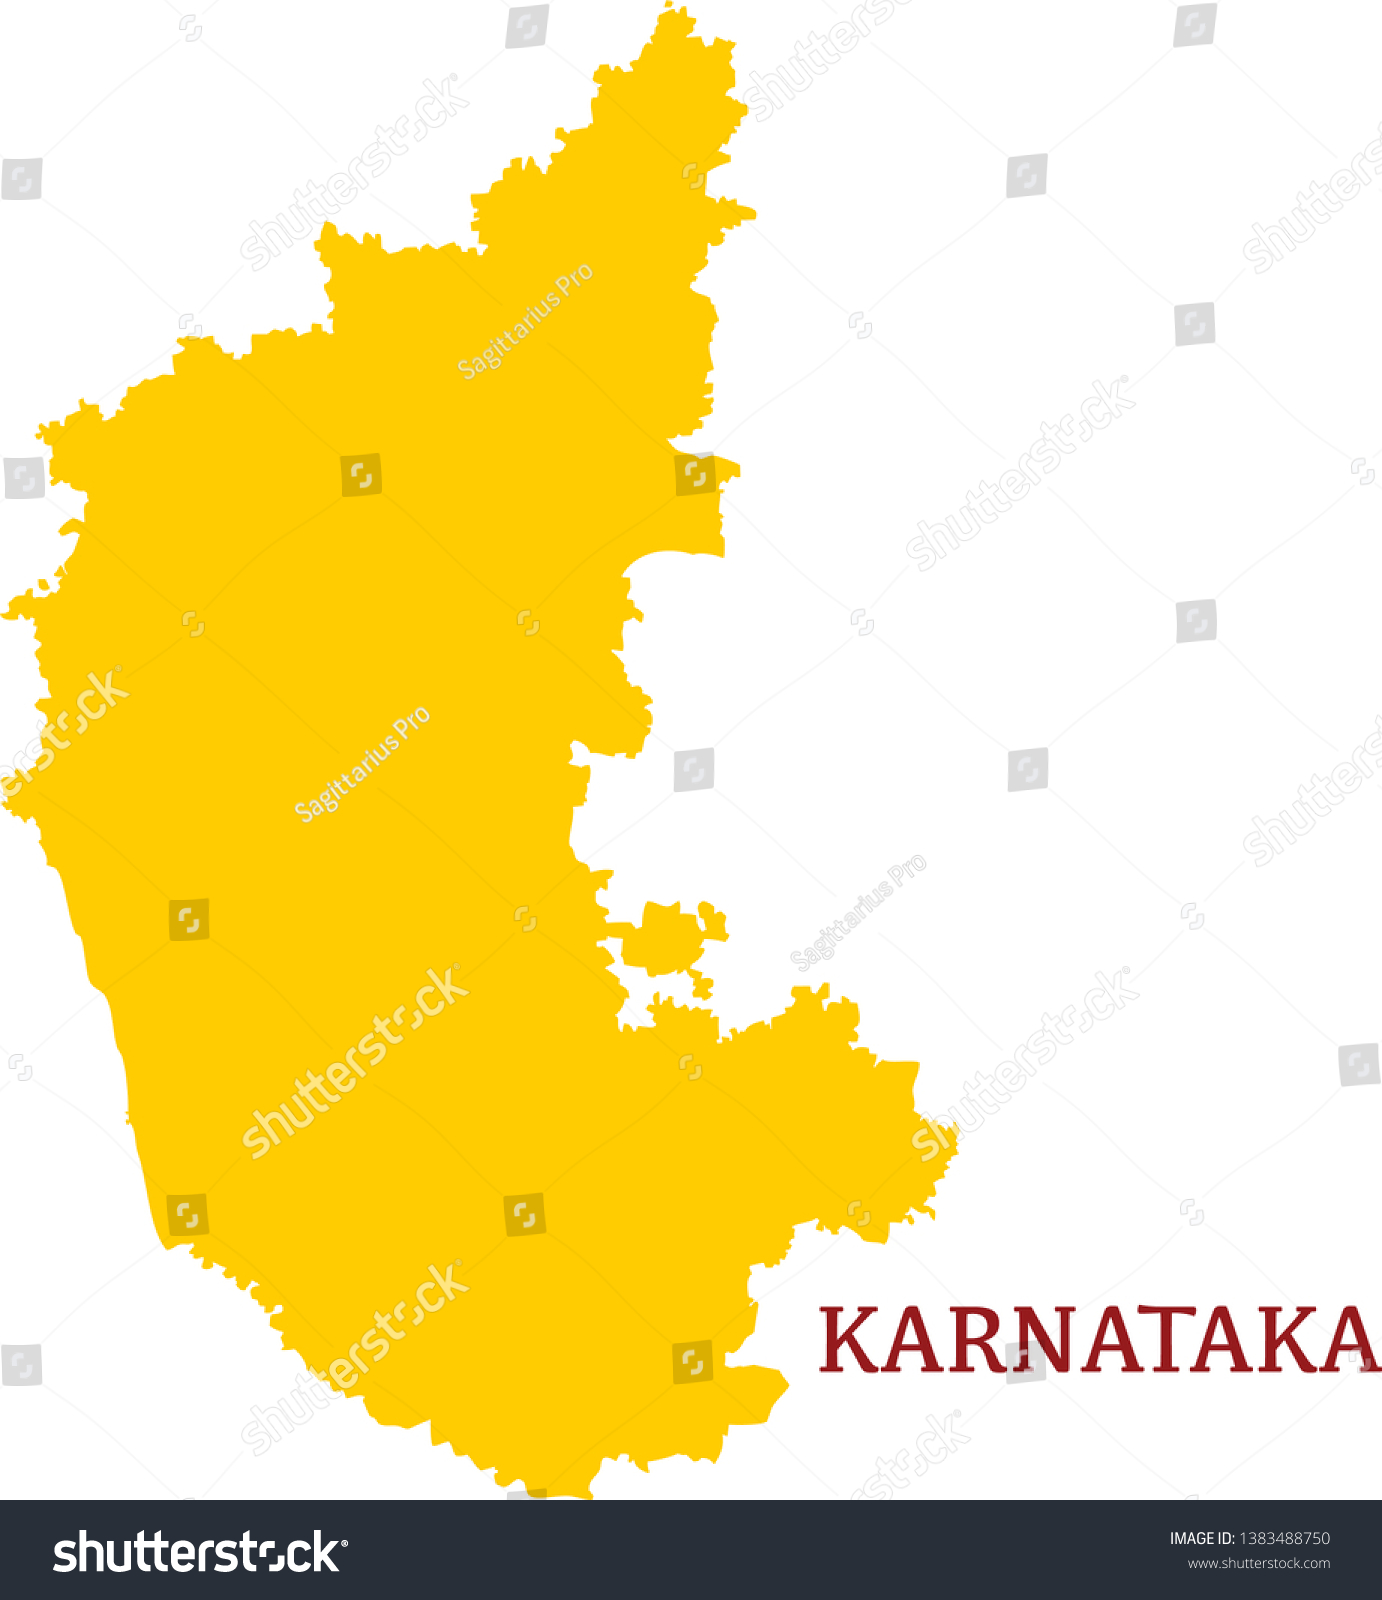 Karnataka India Vector Map High Detailed Stock Vector Royalty Free 1383488750